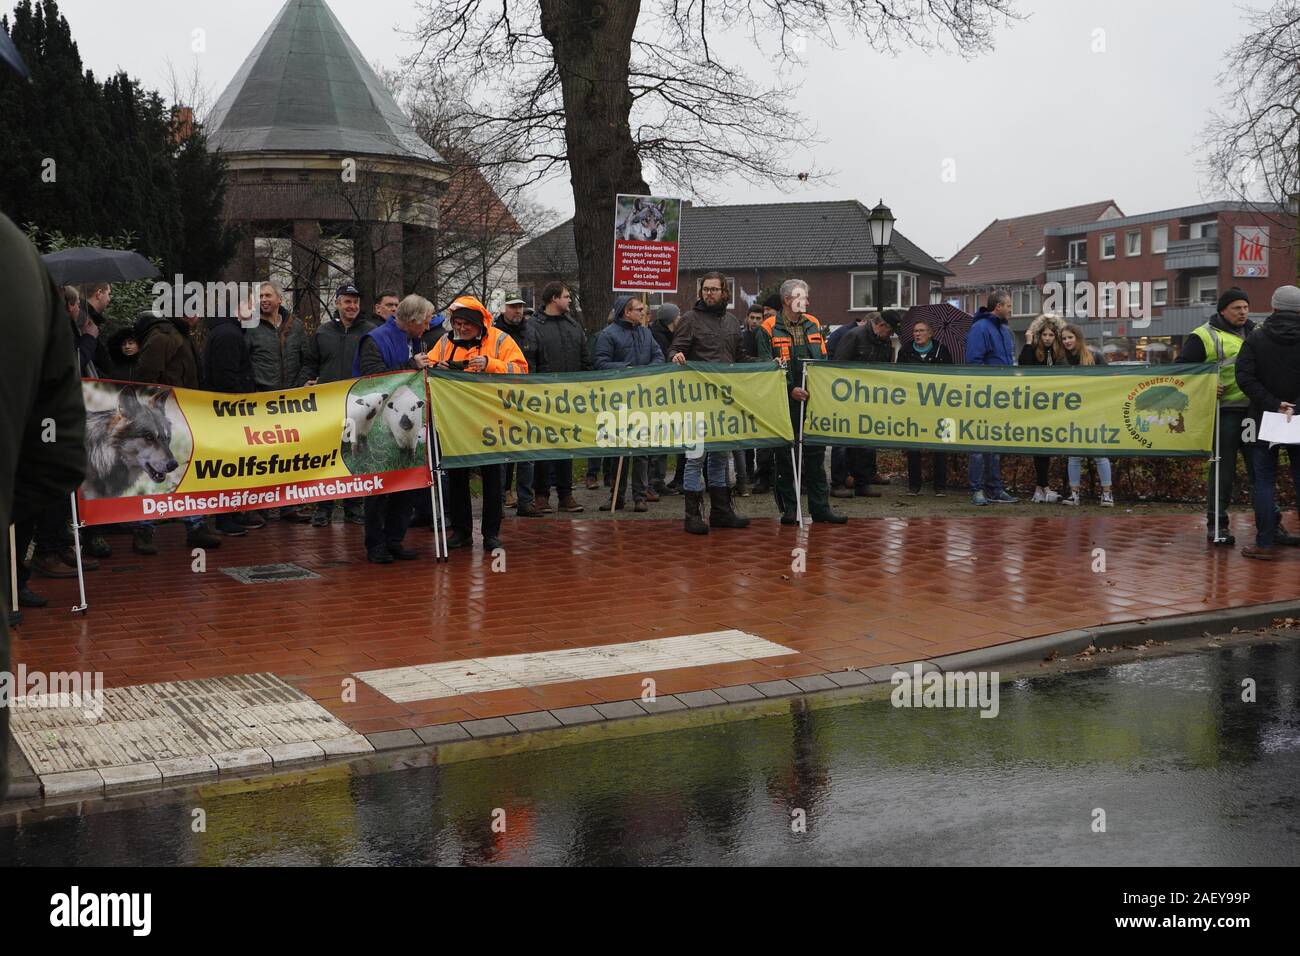 Ministerpräsident Weil zu Besuch in Löningen. Bauern demonstrieren. Grund: Wieder 30 Schafe getötet, Stock Photo